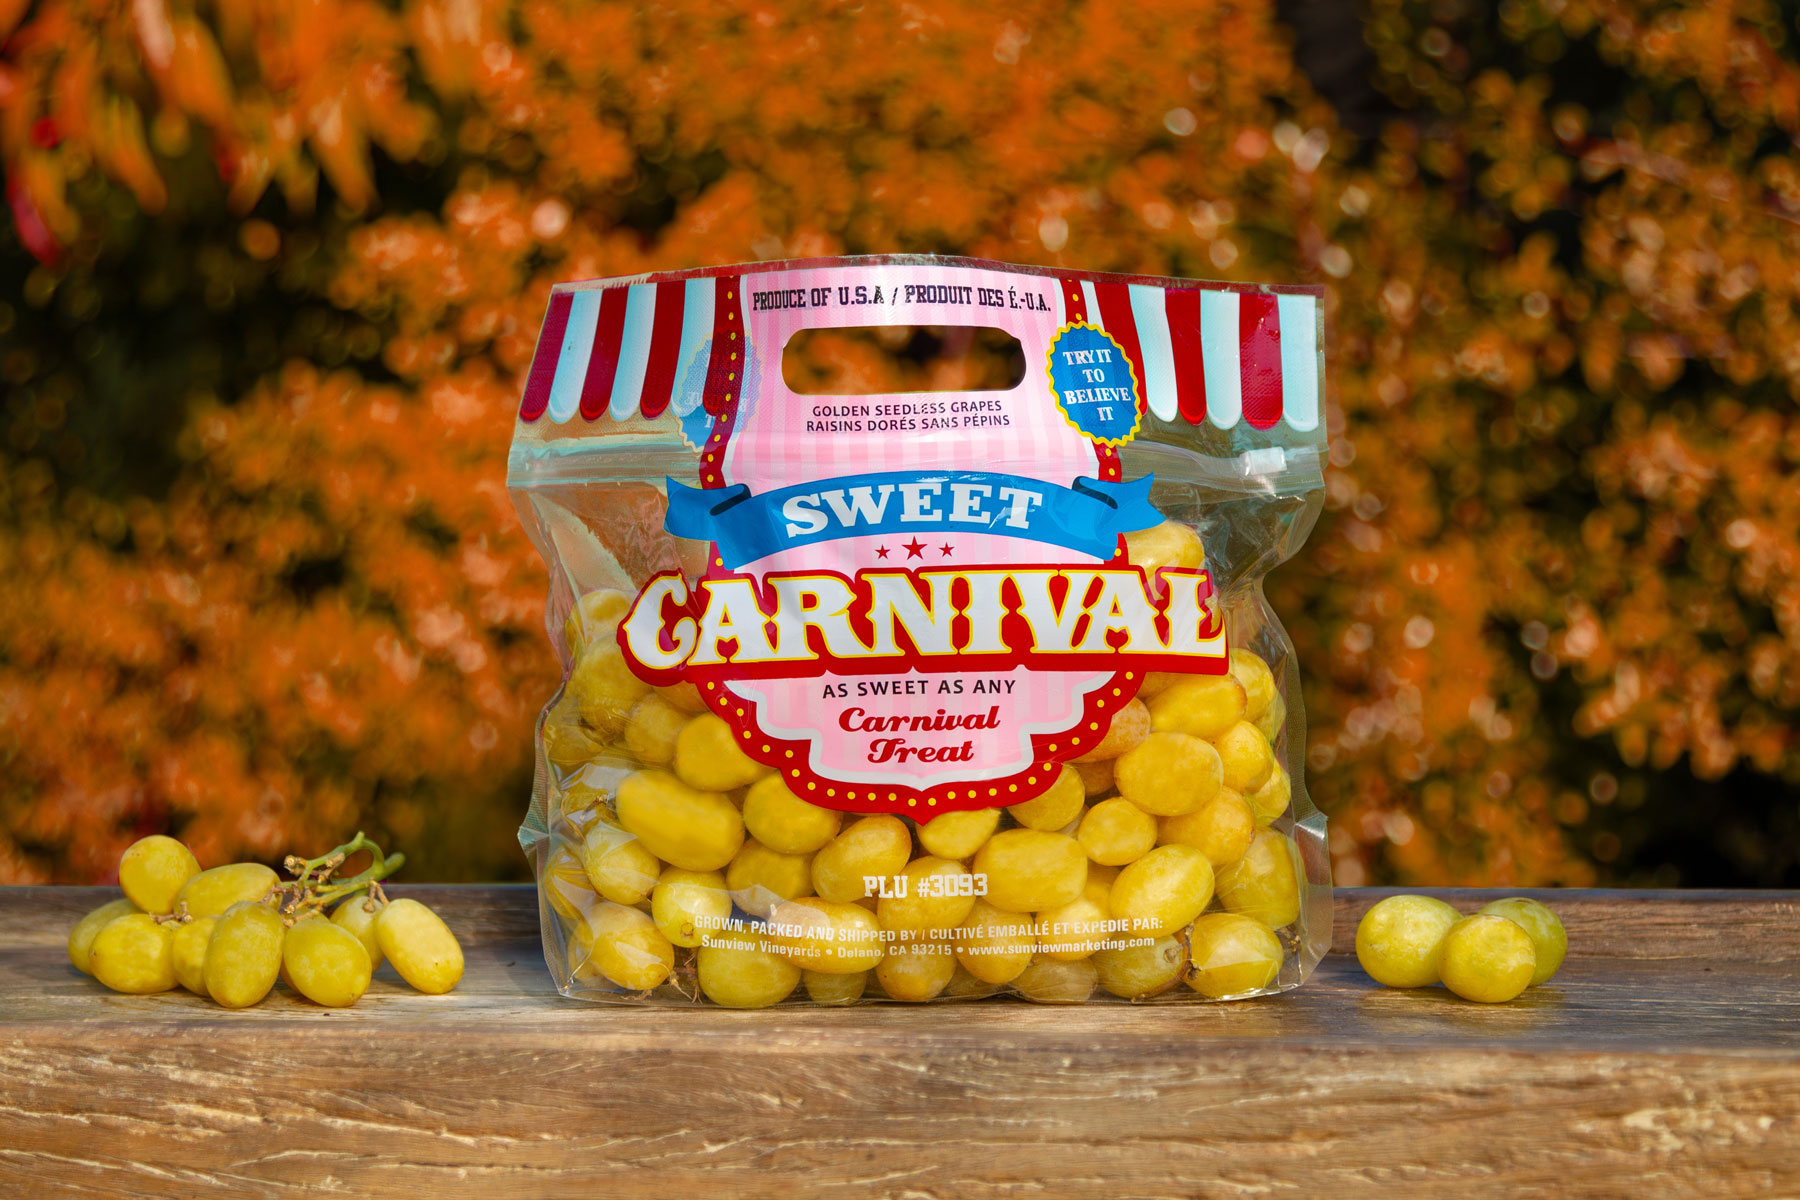 Bag of Sweet Carnival grapes